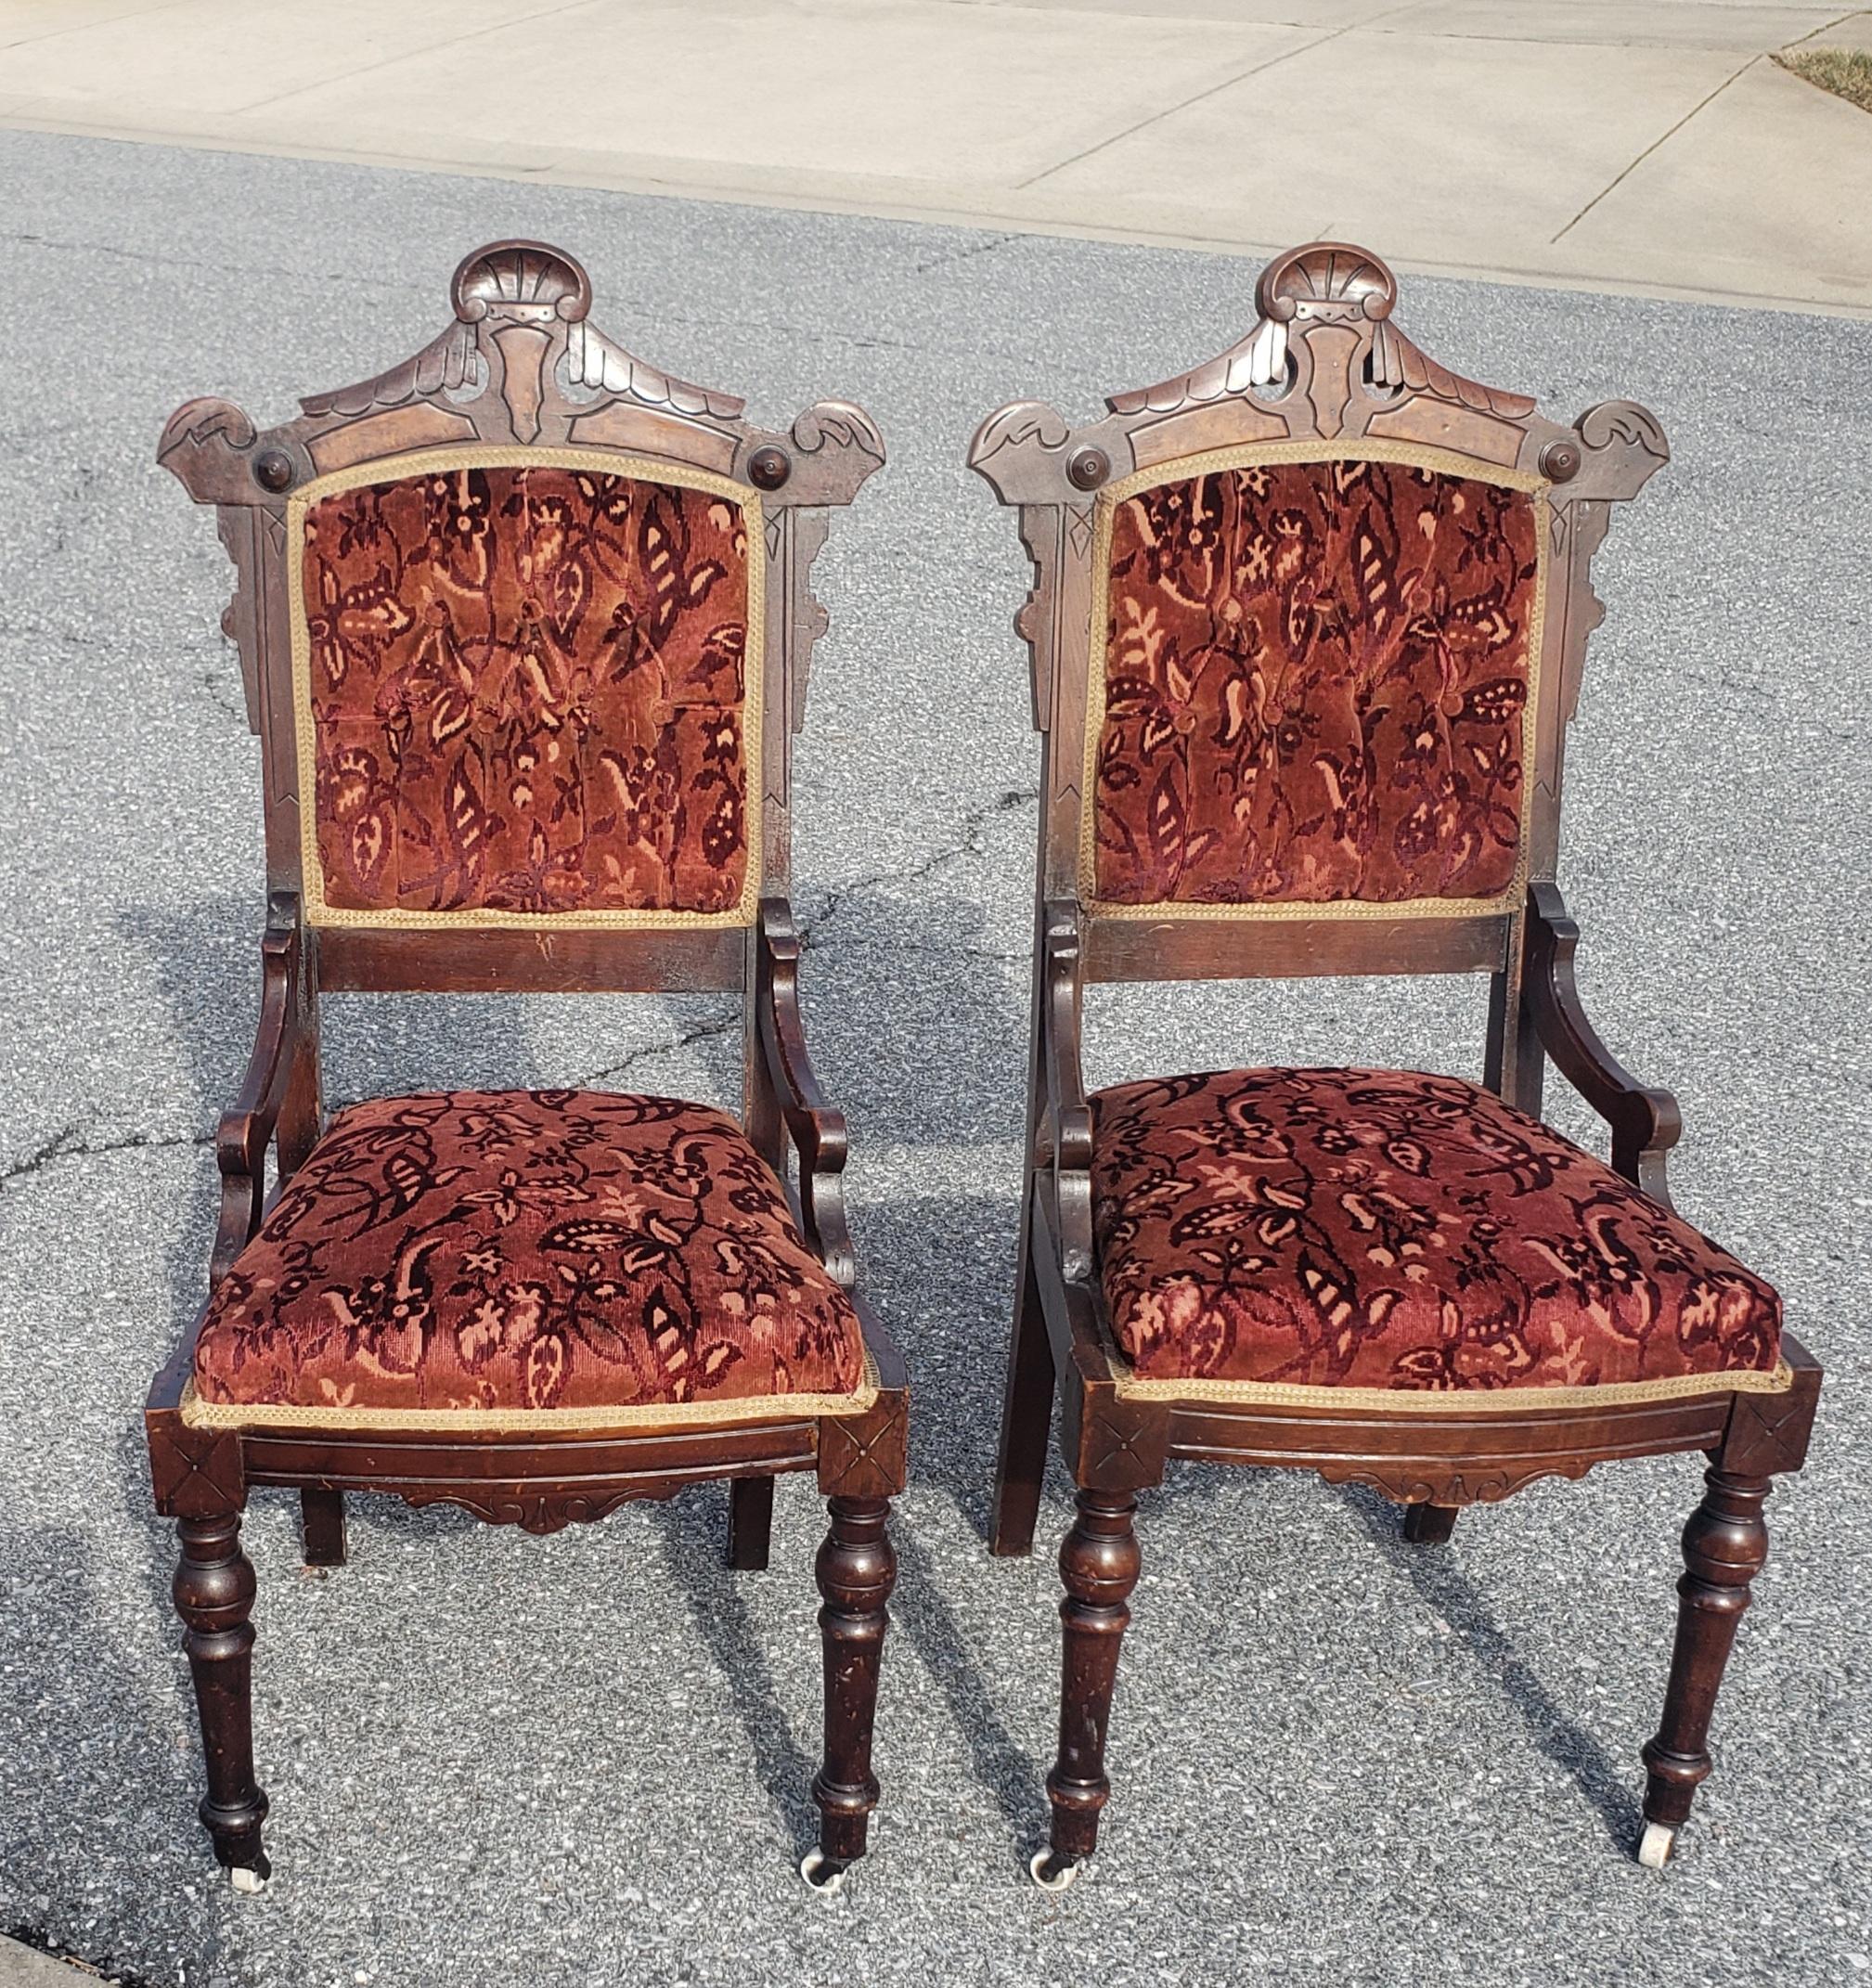 Paire de meubles Philips & Philips des années 1920, chaises victoriennes en noyer et tapissées de velours découpé, repose-hanche en très bon état. Les chaises ont été récemment retapissées et remises en état. Sièges très fermes avec ressort.